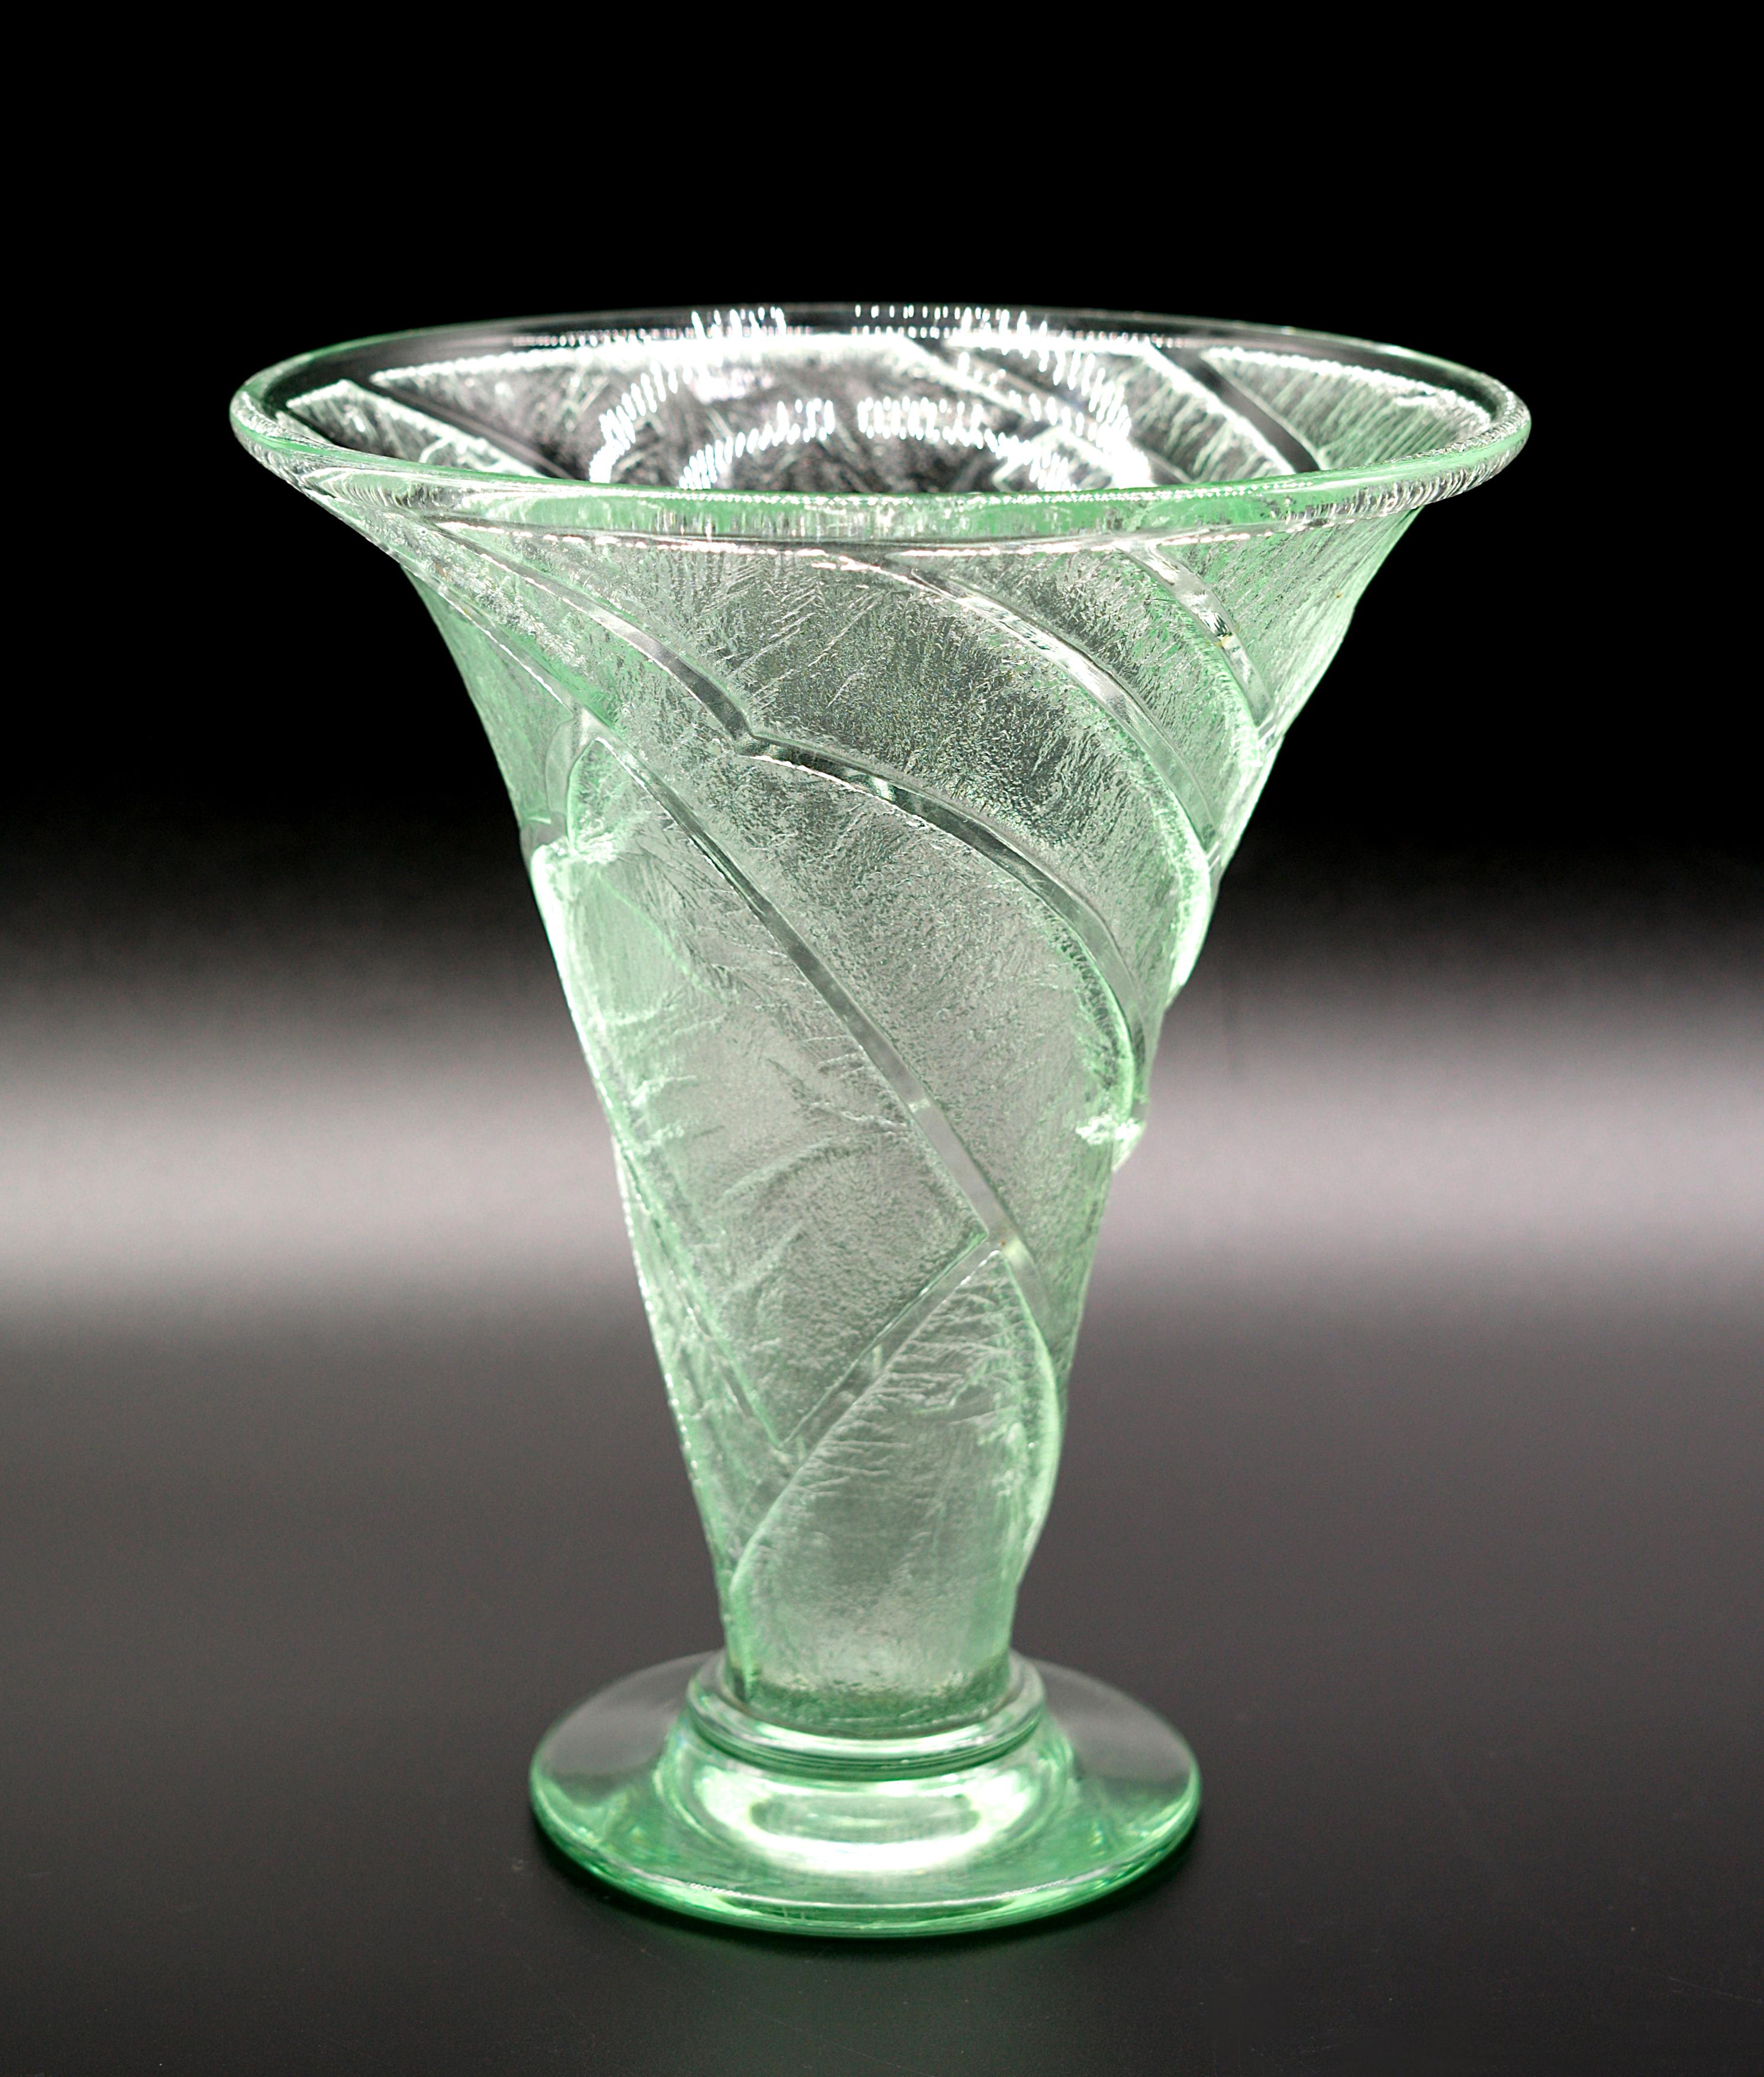 Französische Art Déco-Vase aus säuregeätztem Glas von DAUM (Nancy), Frankreich, 1930er Jahre. Farbe: grün. Maße: Höhe: 21 cm (8,3